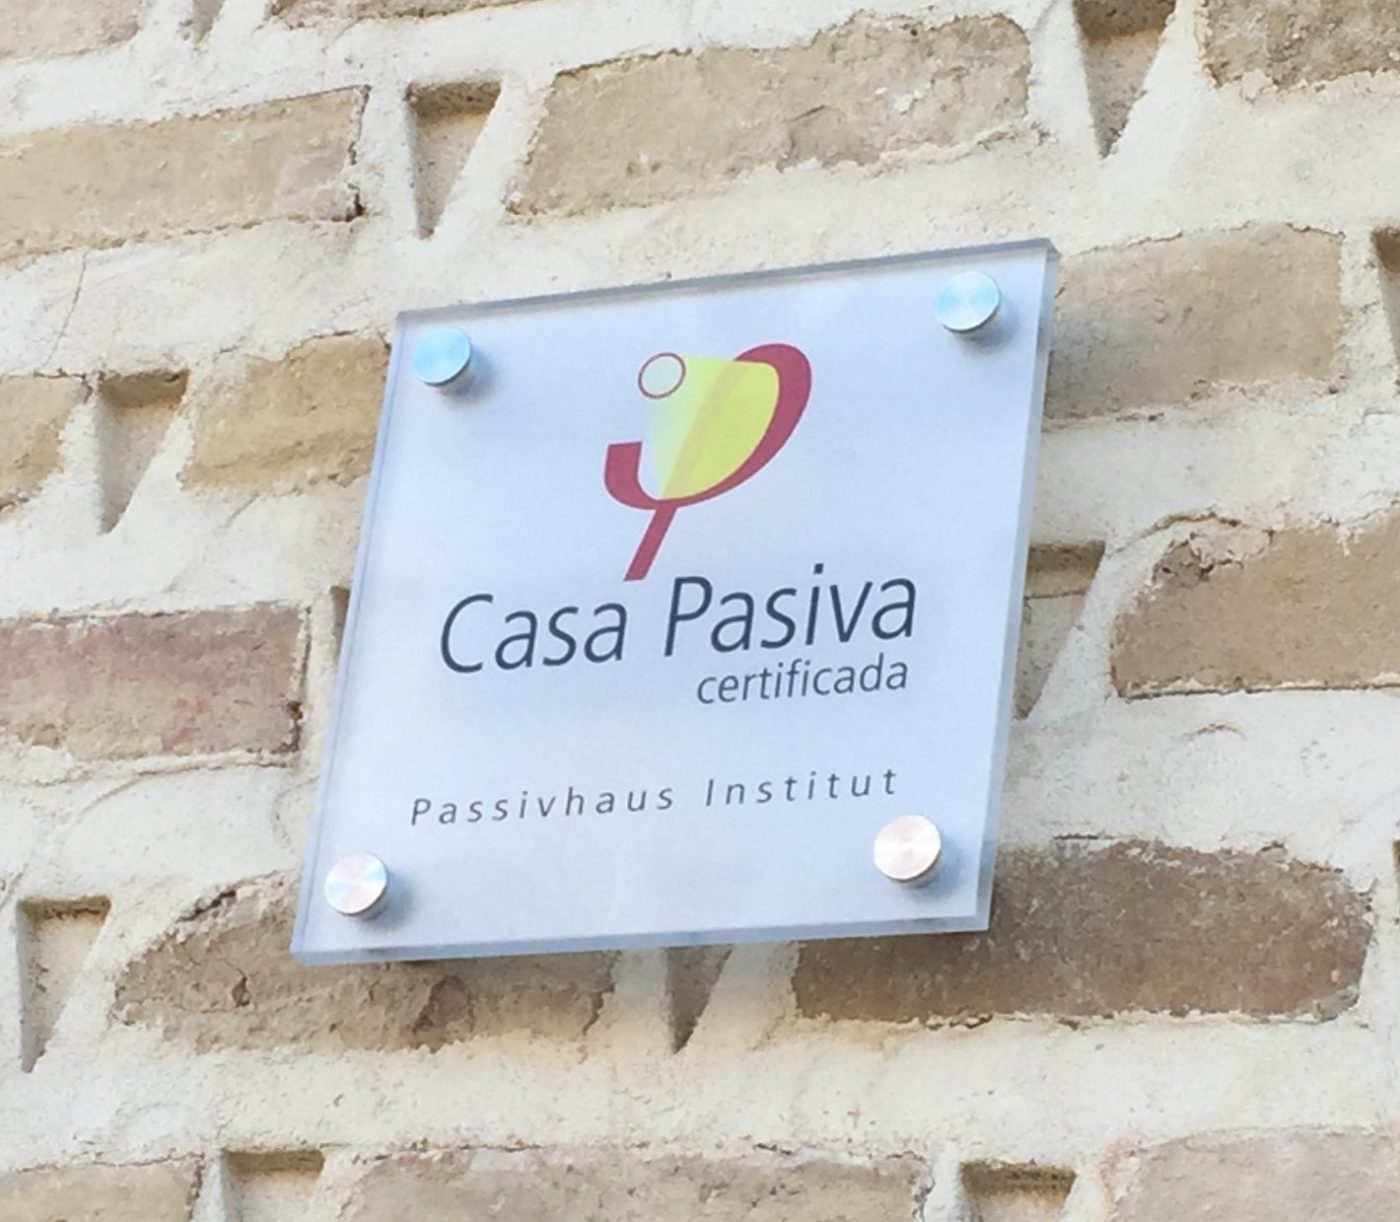 Primera vivienda certificada Passivhaus en Castilla y León